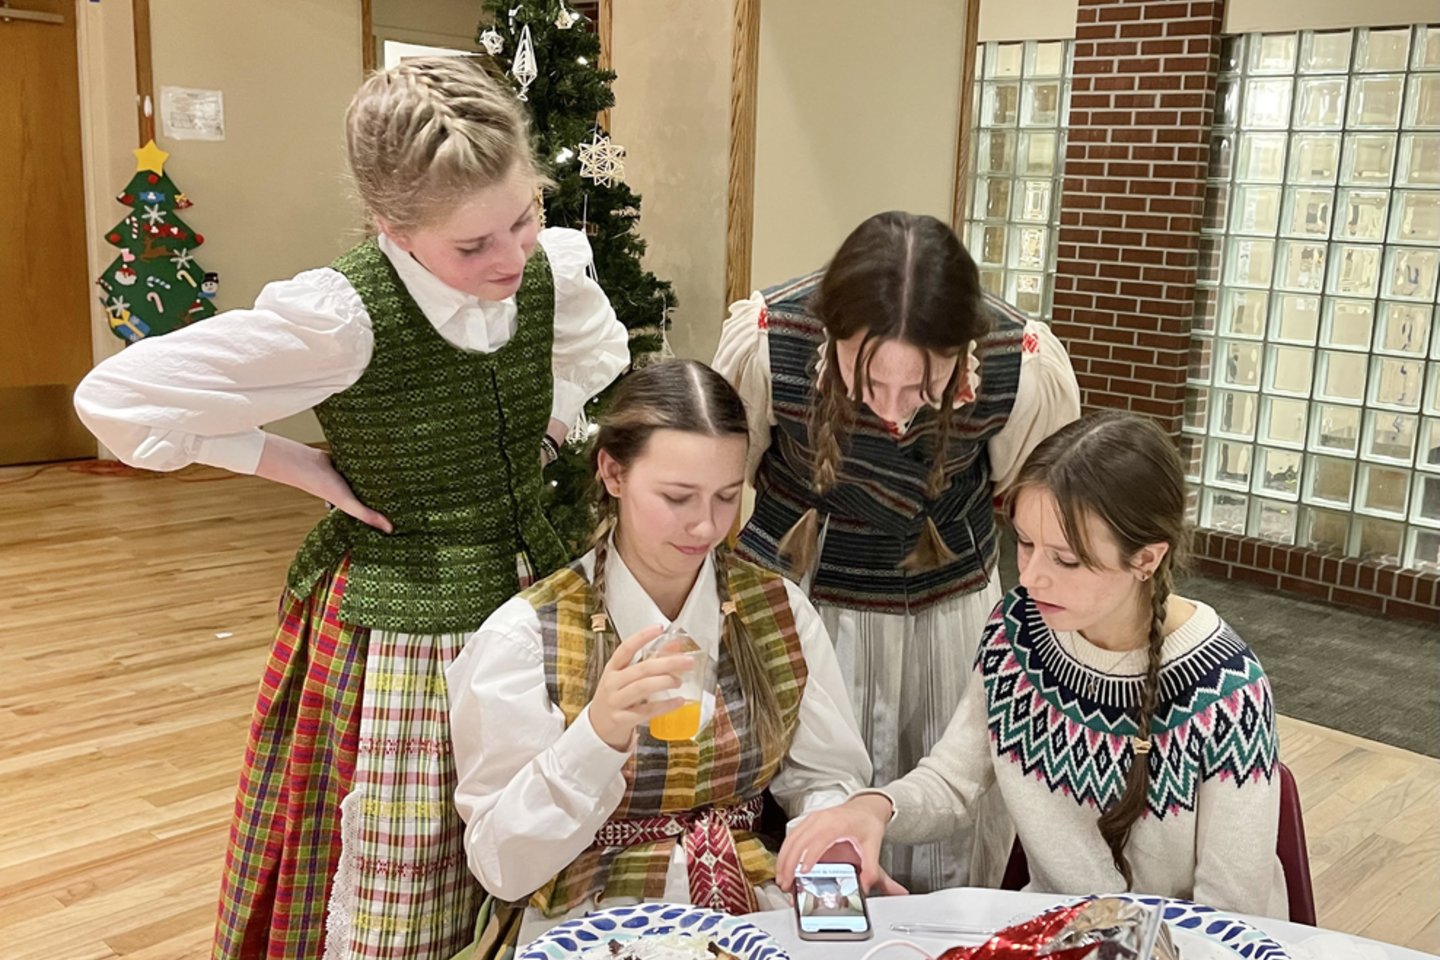  Kolorado lituanistinė mokykla, kartu su Kolorado lietuvių bendruomene, paminėjo artėjančias šv. Kalėdas.<br> Autorių nuotr.